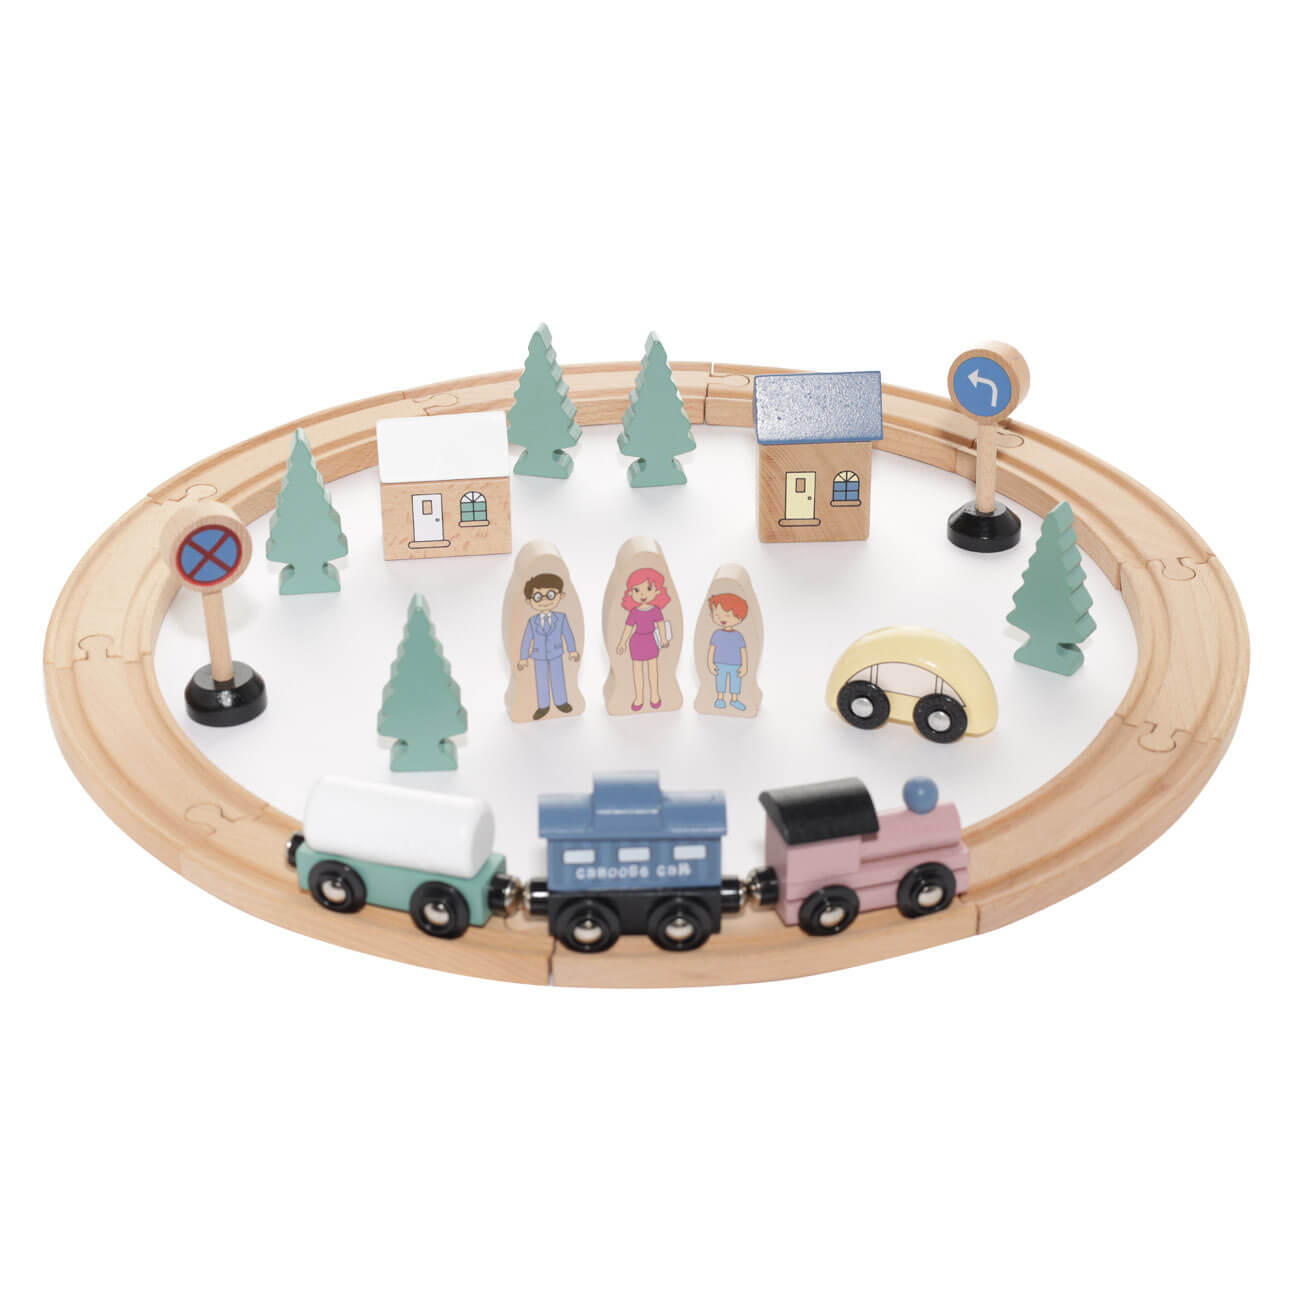 Железная дорога игрушечная, 28 см, дерево, Город, Game дорога на аннапурну с автографом